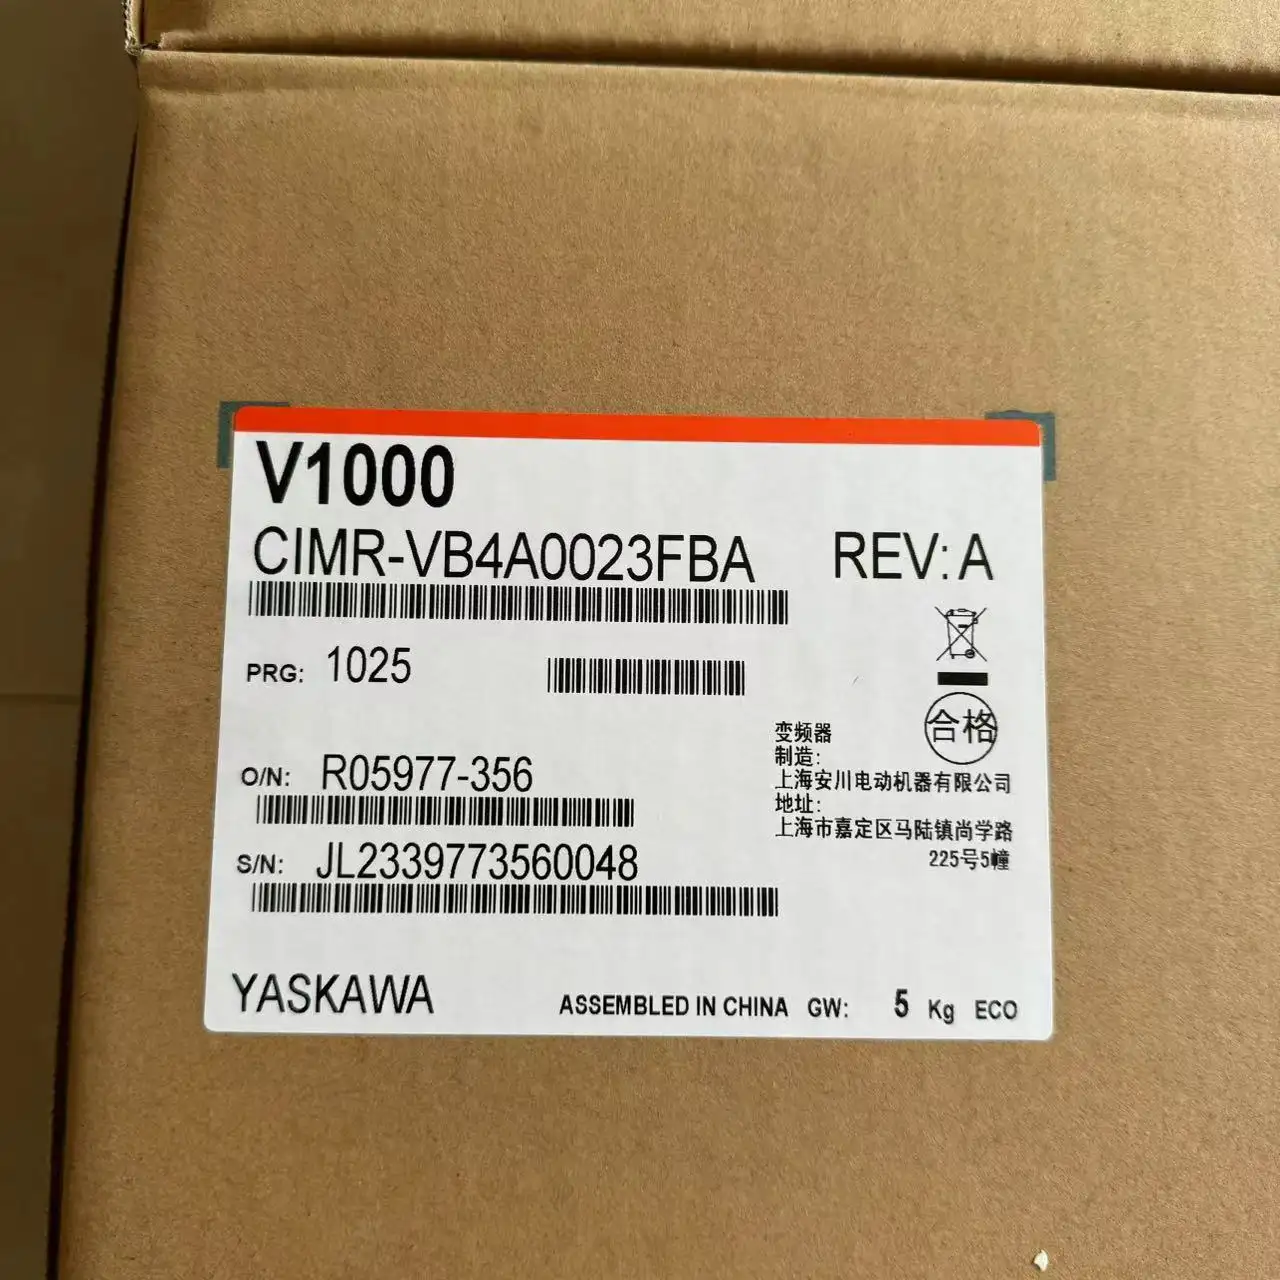 CIMR-VB4A0023FBA привод переменной скорости Yaskawa